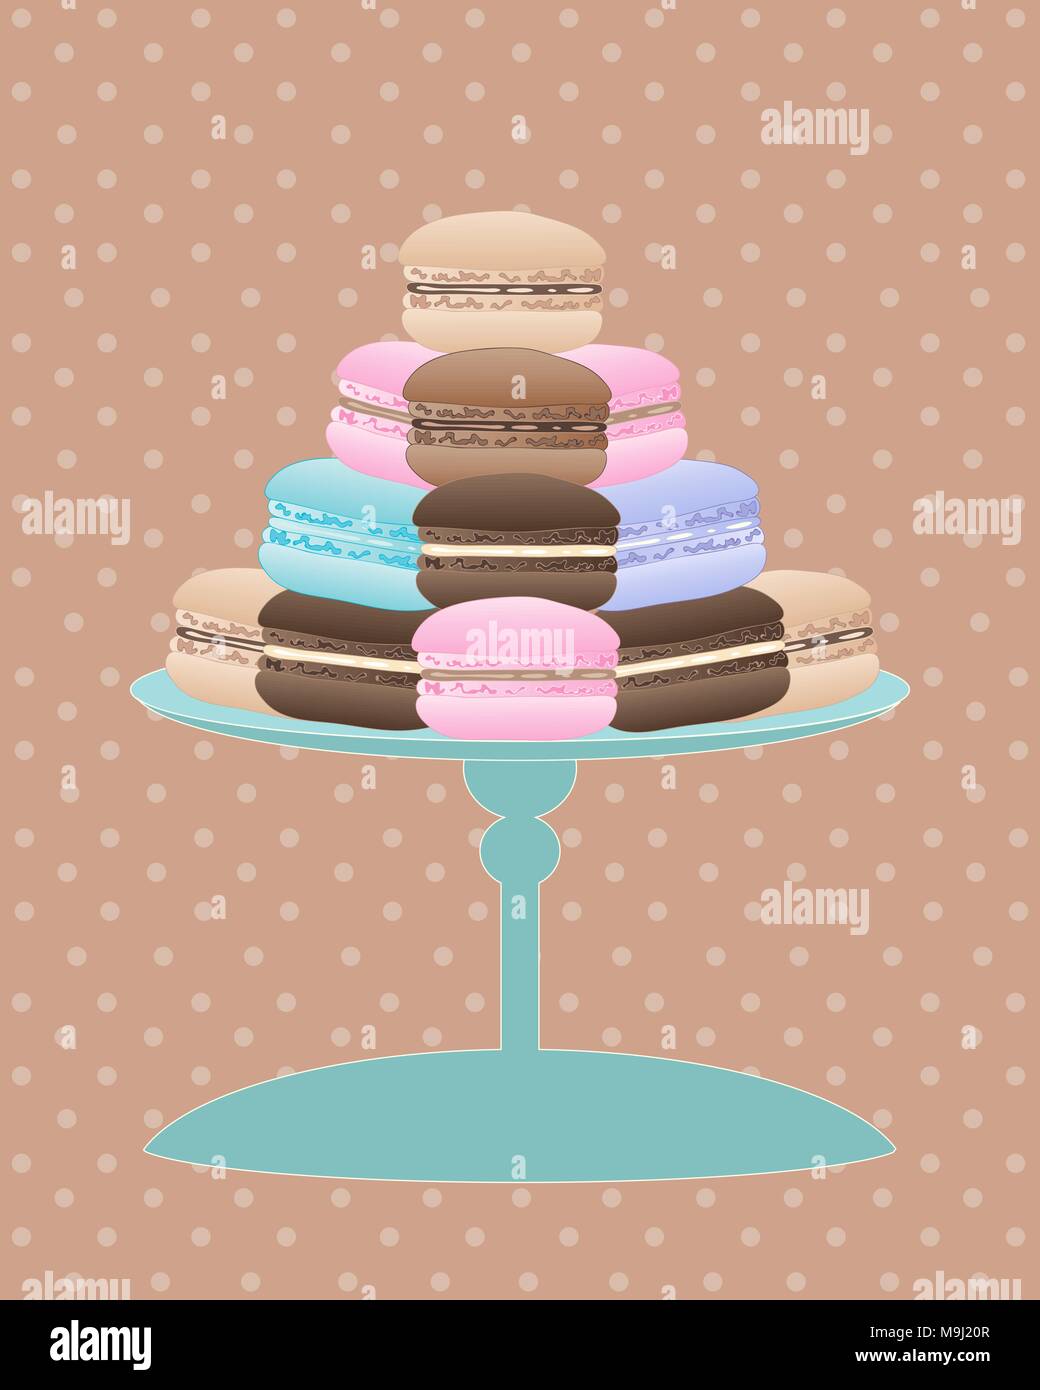 Une illustration d'un cake stand avec de délicieux macarons en vintage de couleurs sur un fond irrégulier Illustration de Vecteur